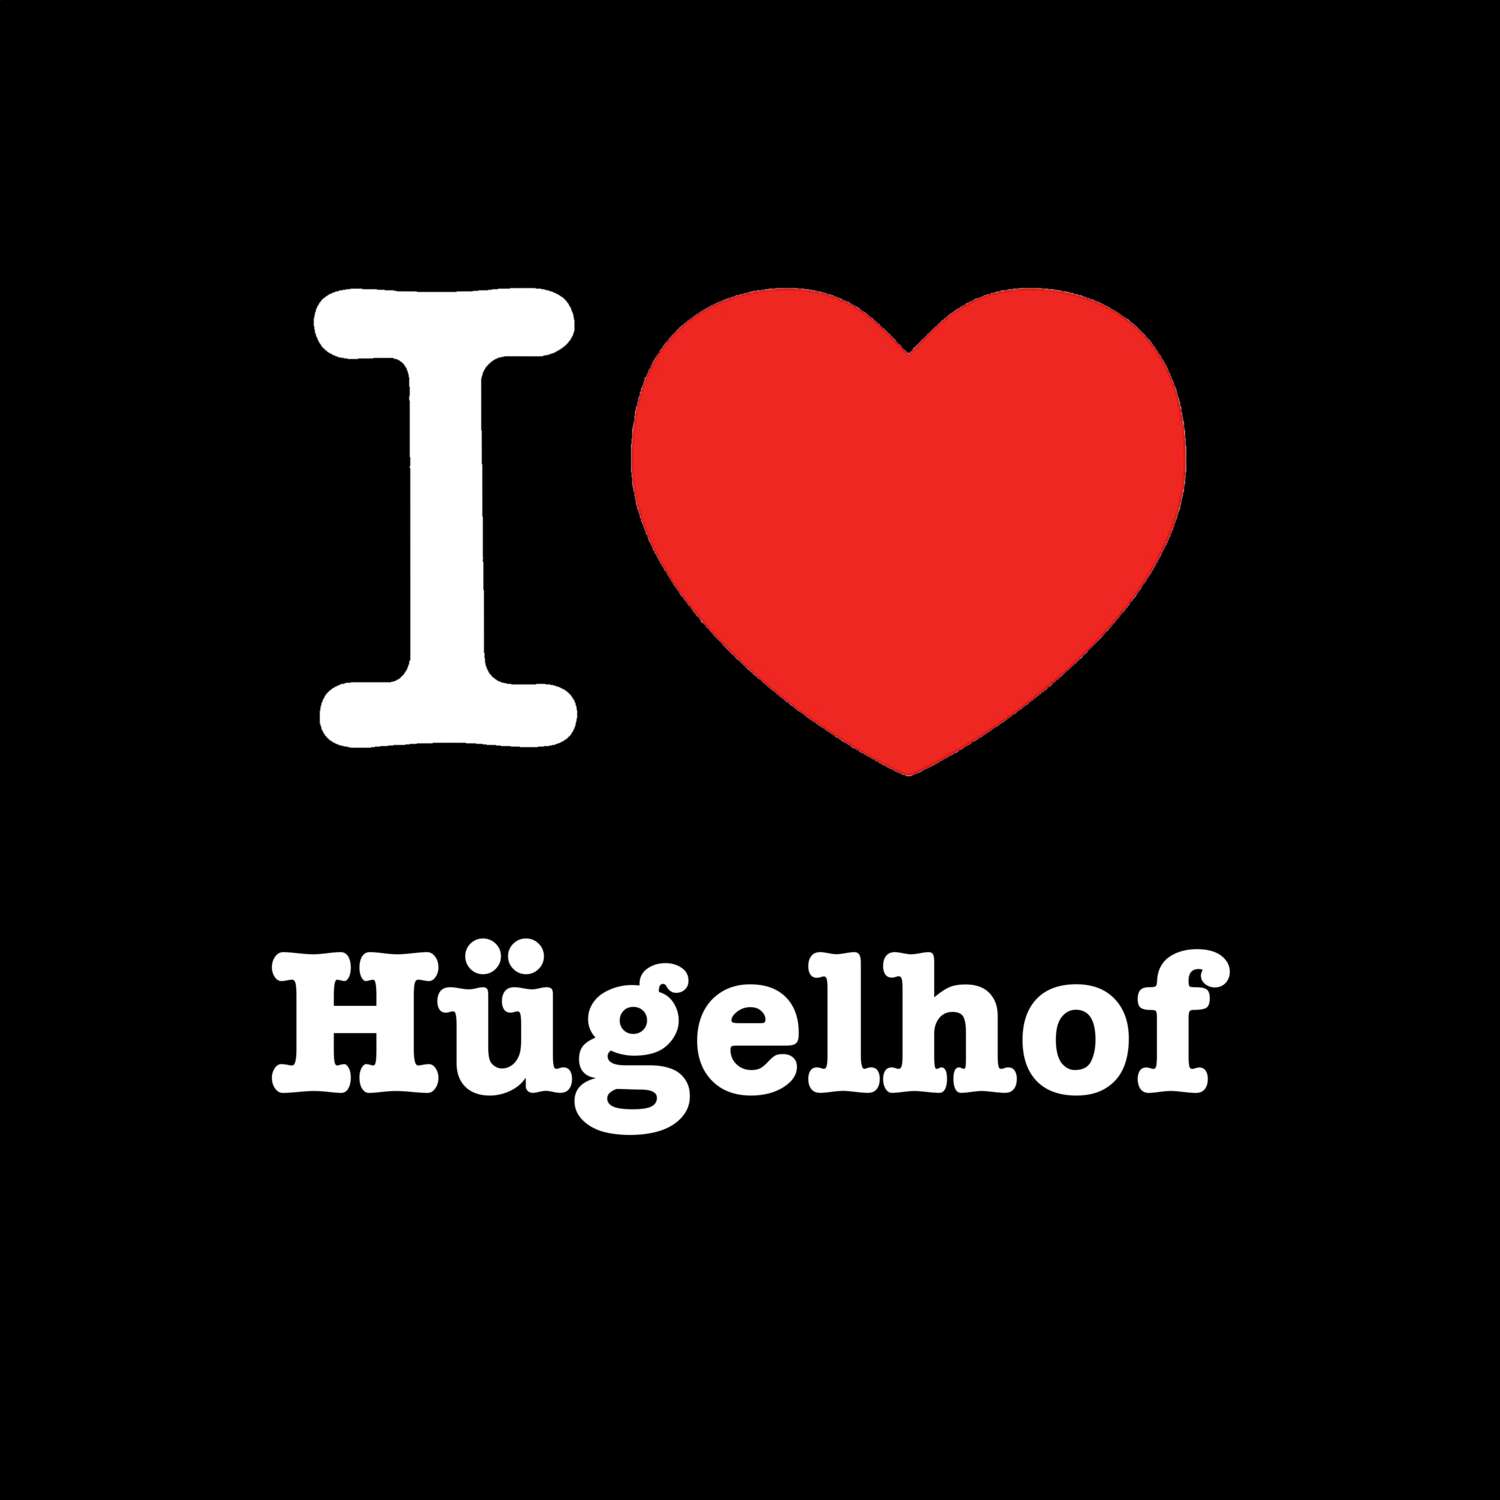 Hügelhof T-Shirt »I love«